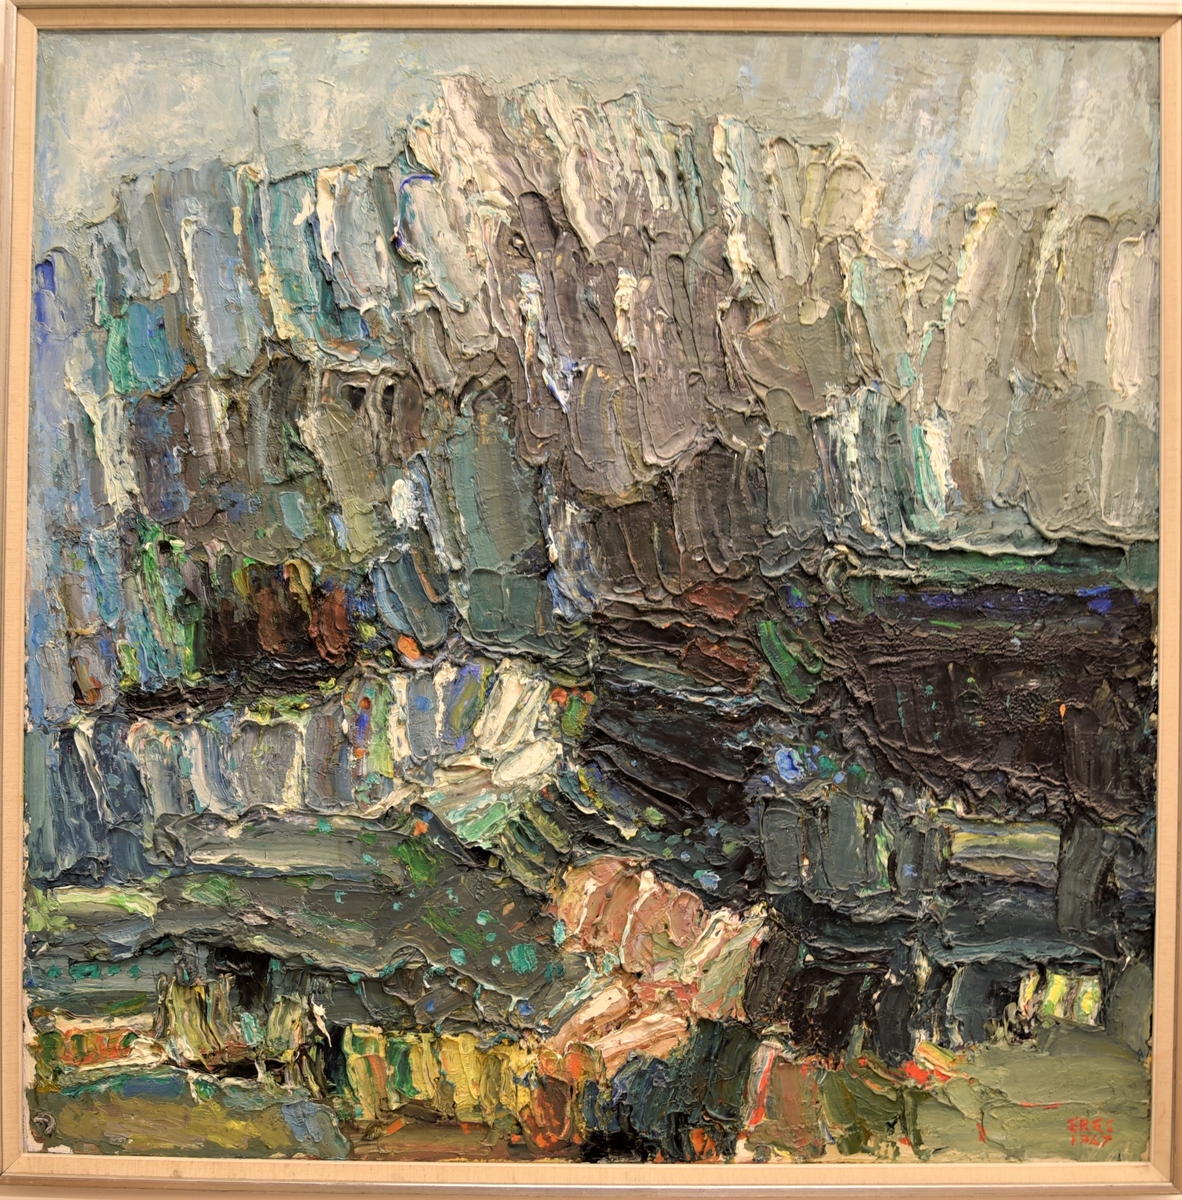 Abstrakt komposition i kraftiga penseldrag i tjock pålagd färg. Grått och blått dominerar; inslag av grönt, gult, svart, rött och vitt.